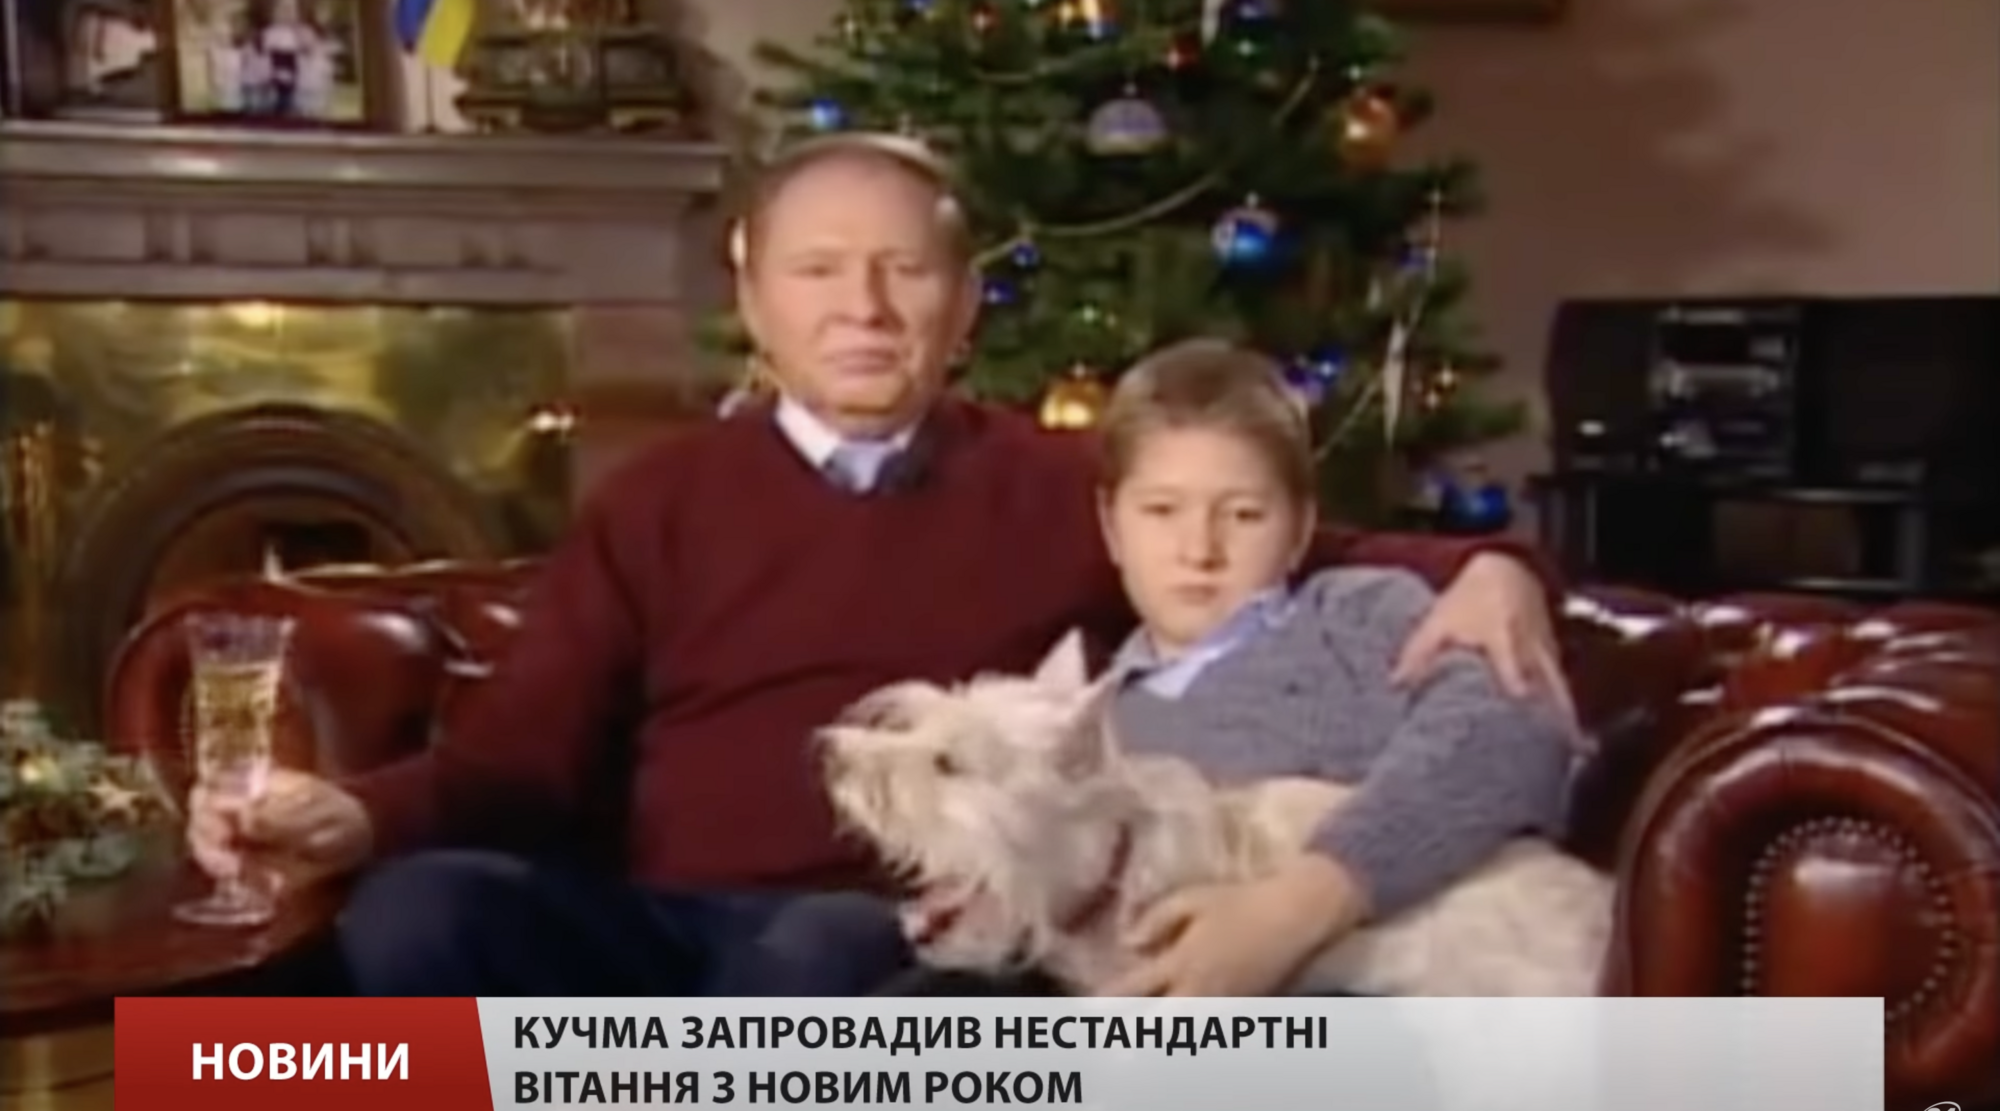 Где сейчас и как выглядит любимый внук Кучмы, который снимался с ним в новогоднем поздравлении 2003 года